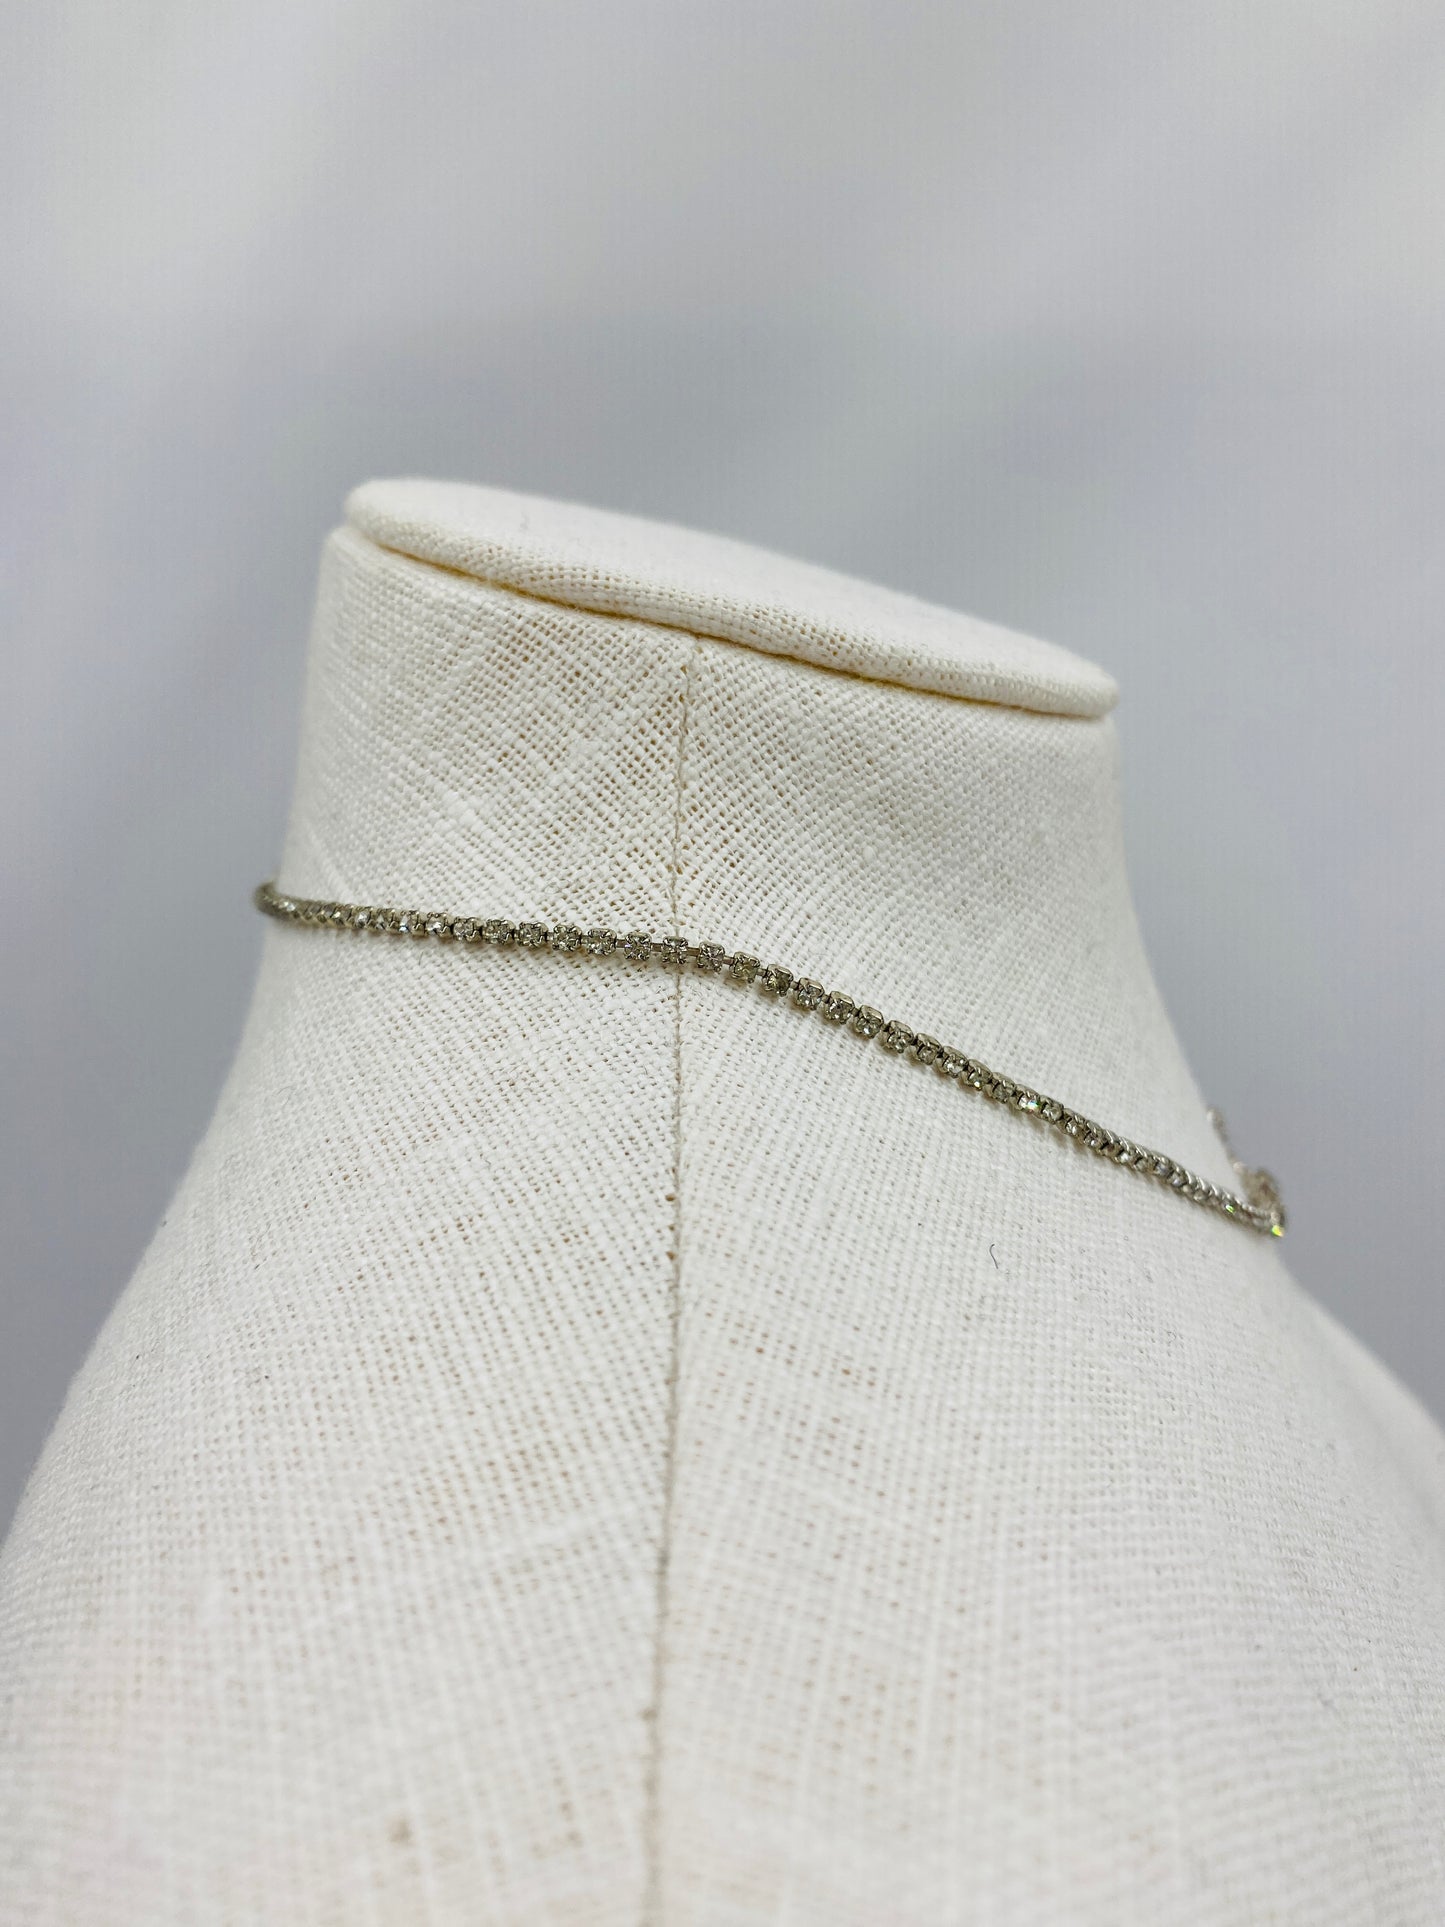 Vintage 1940s Minimalist Diamanté Necklace